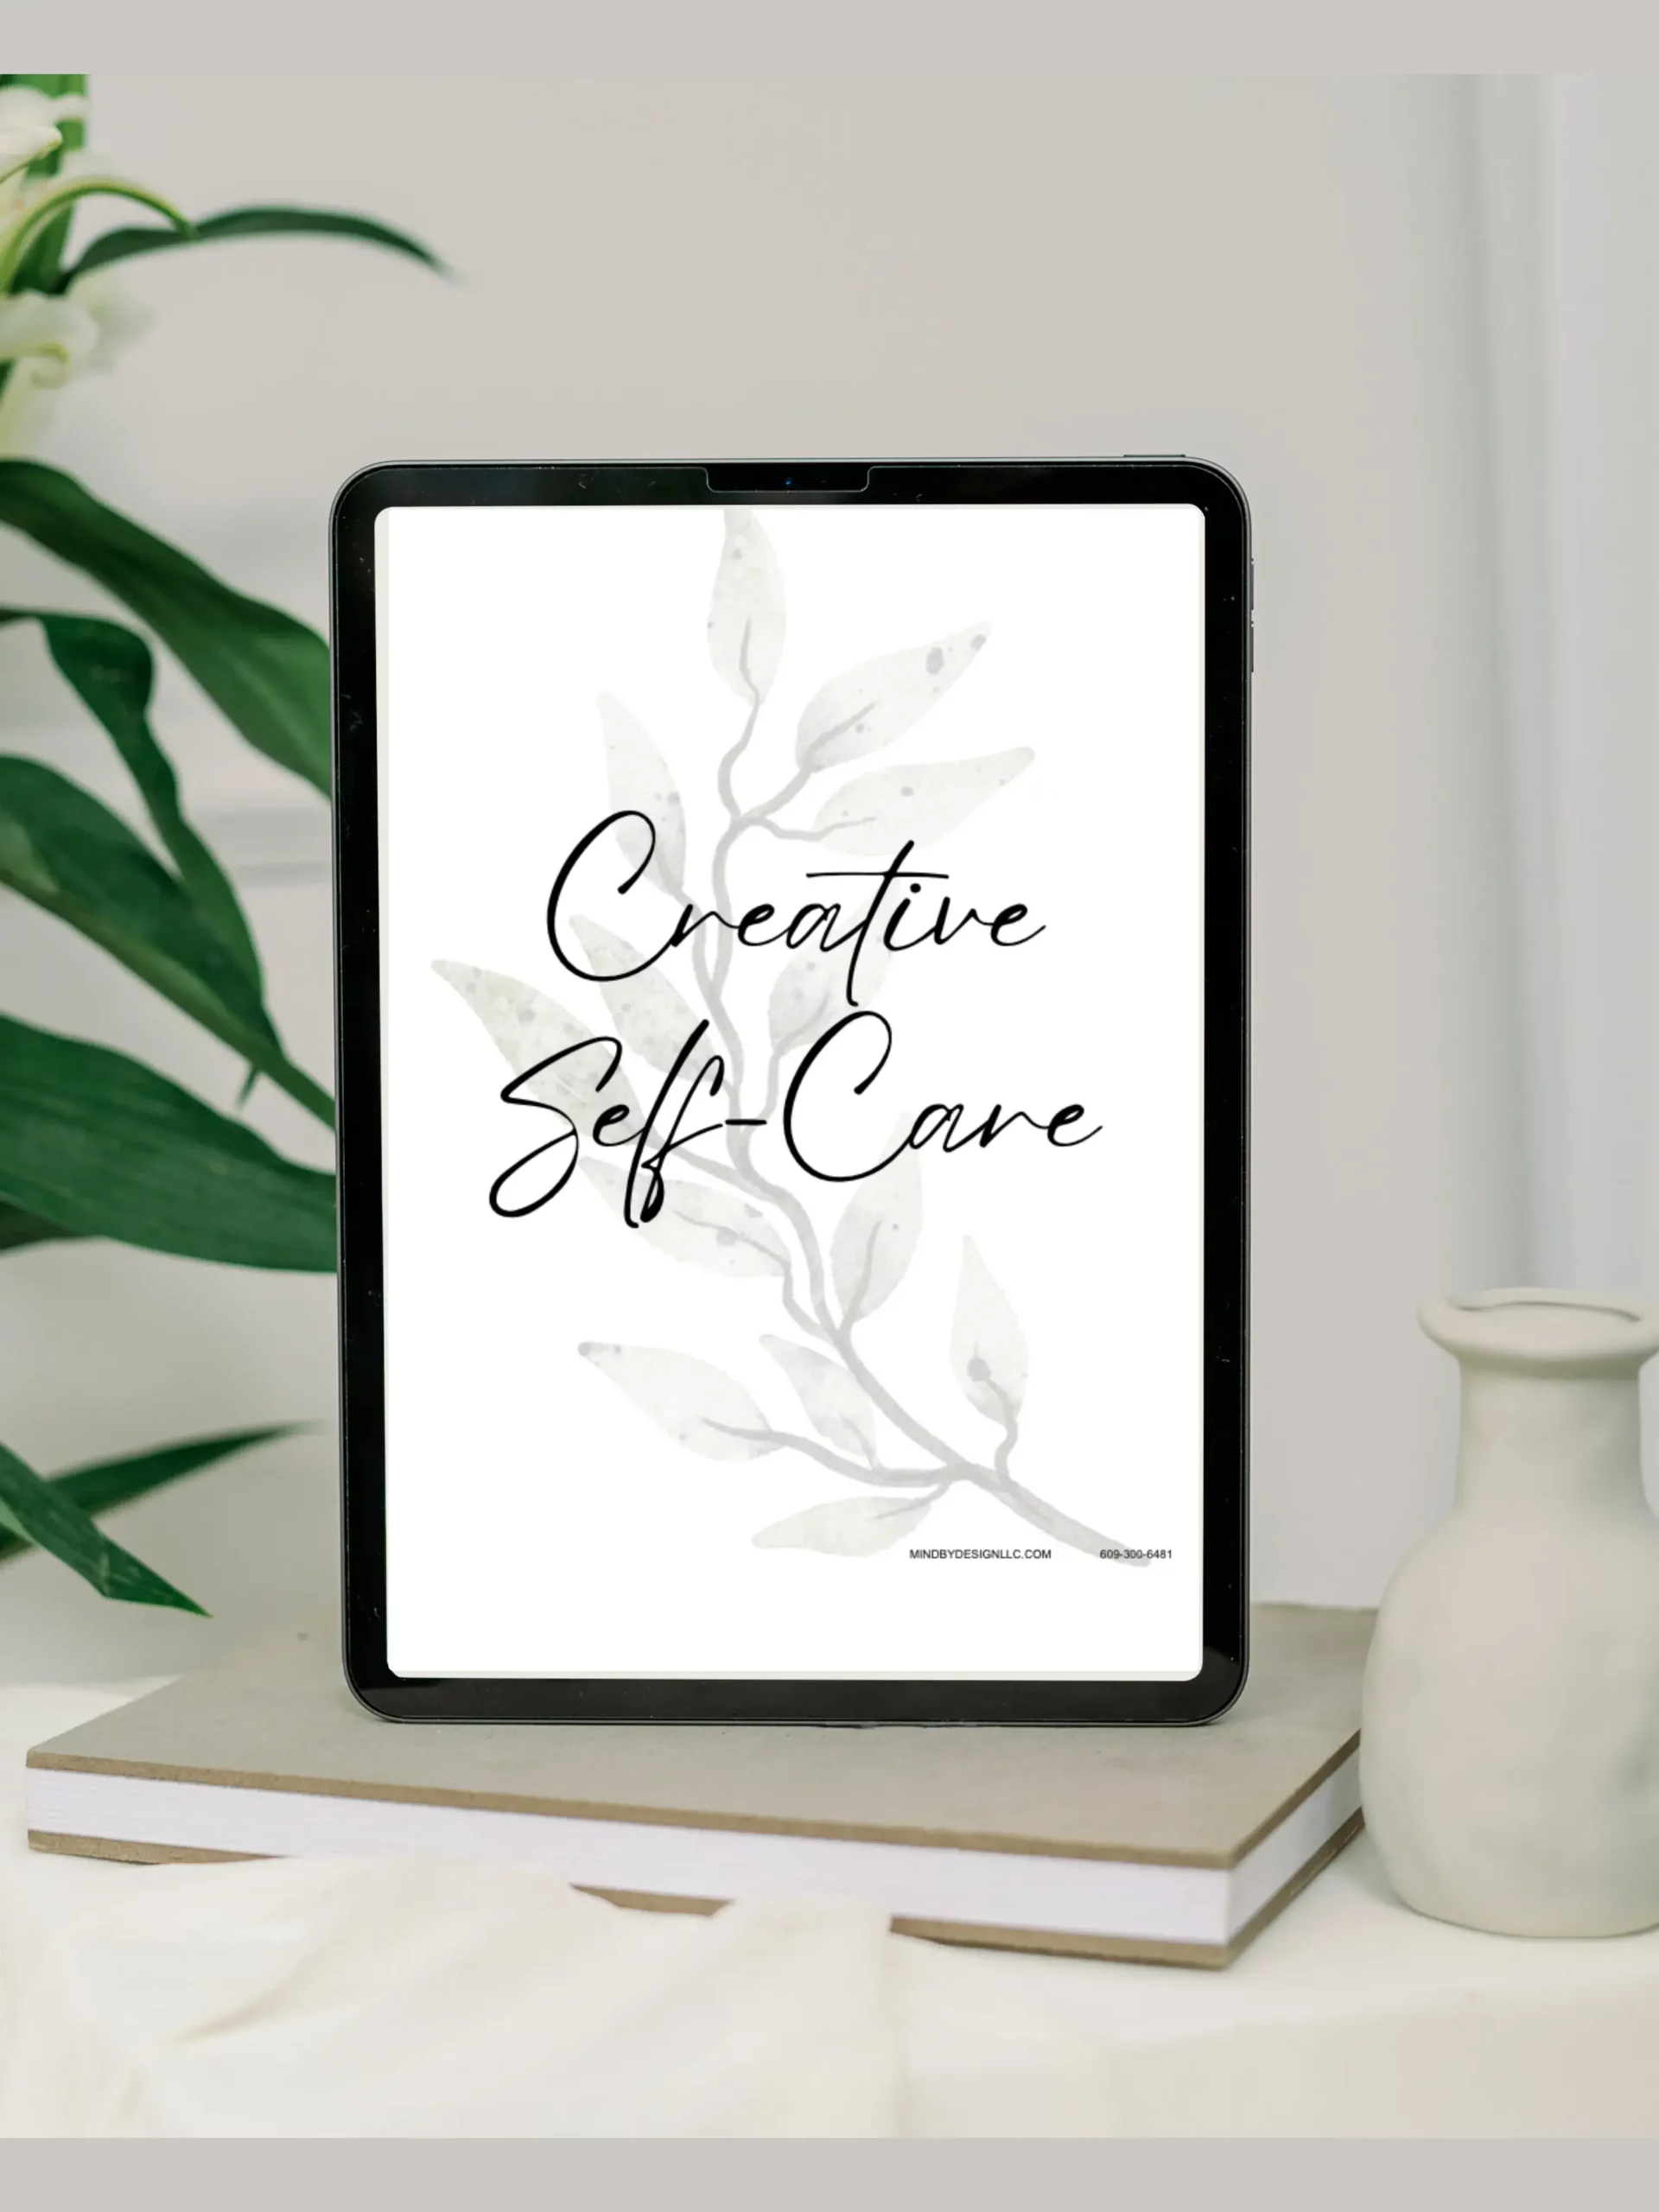 Therapy book: Creative Self Care Guide